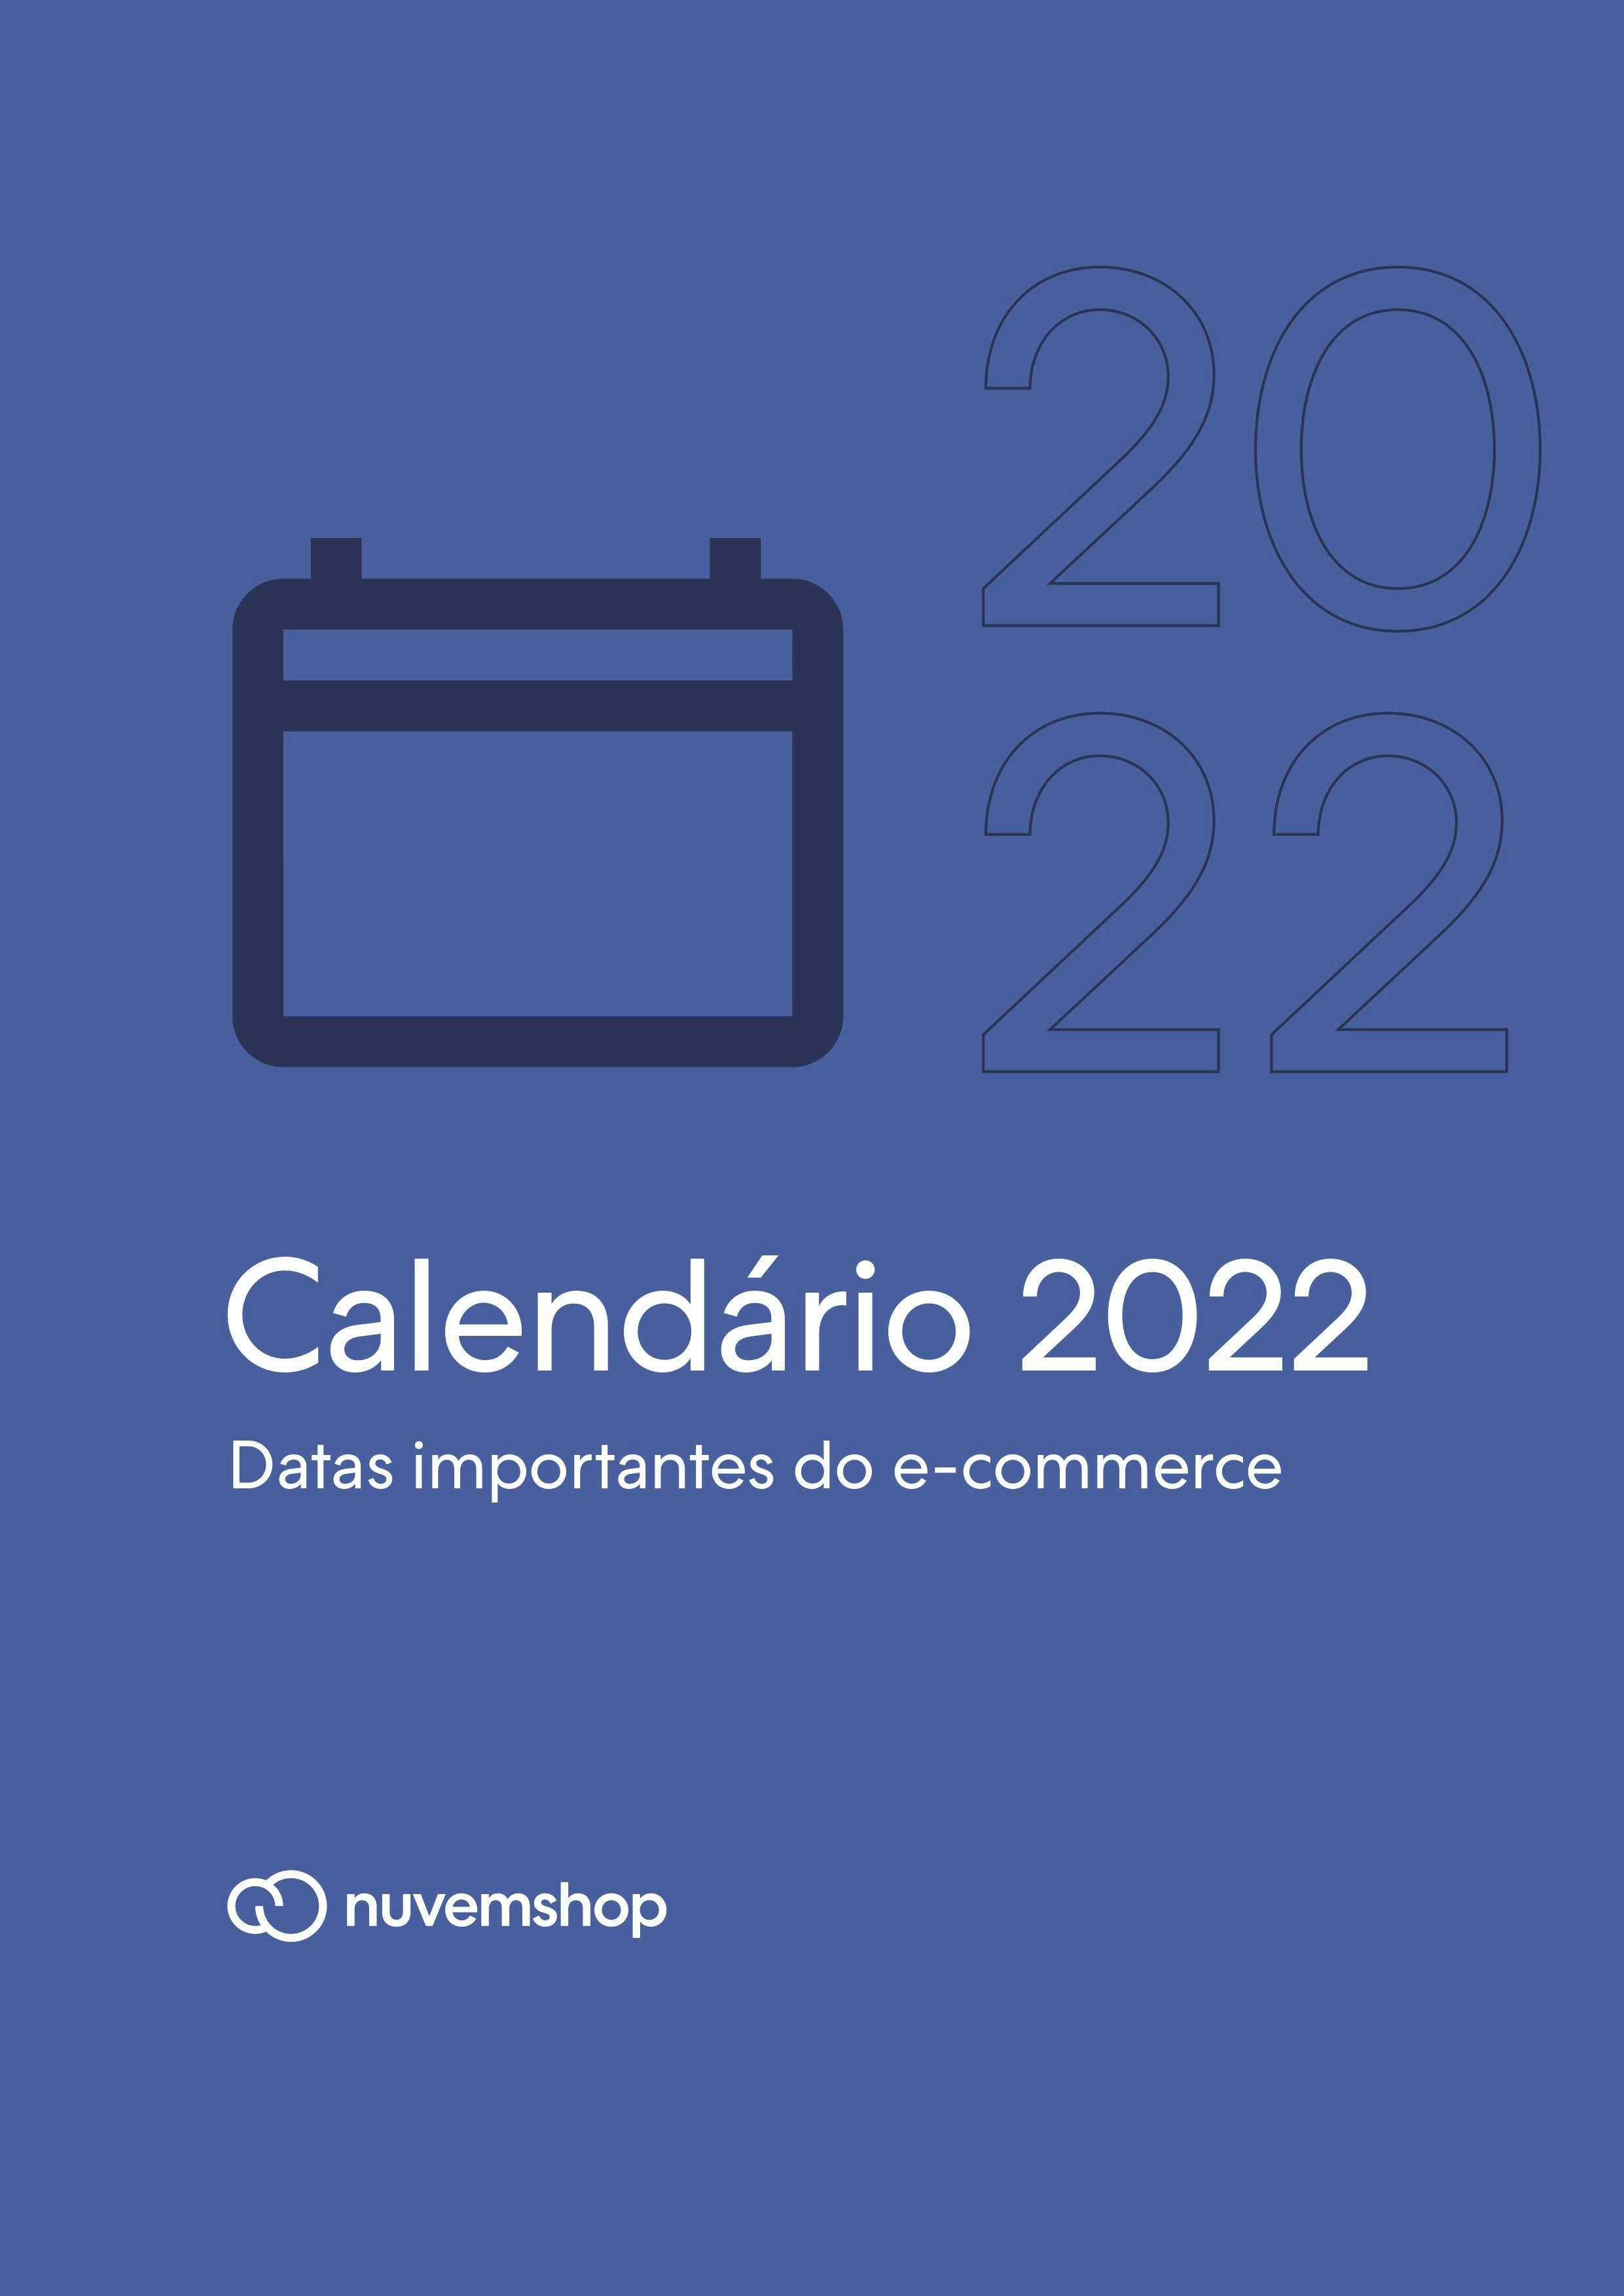 imagem da capa do calendário comercial 2022 para lojas virtuais